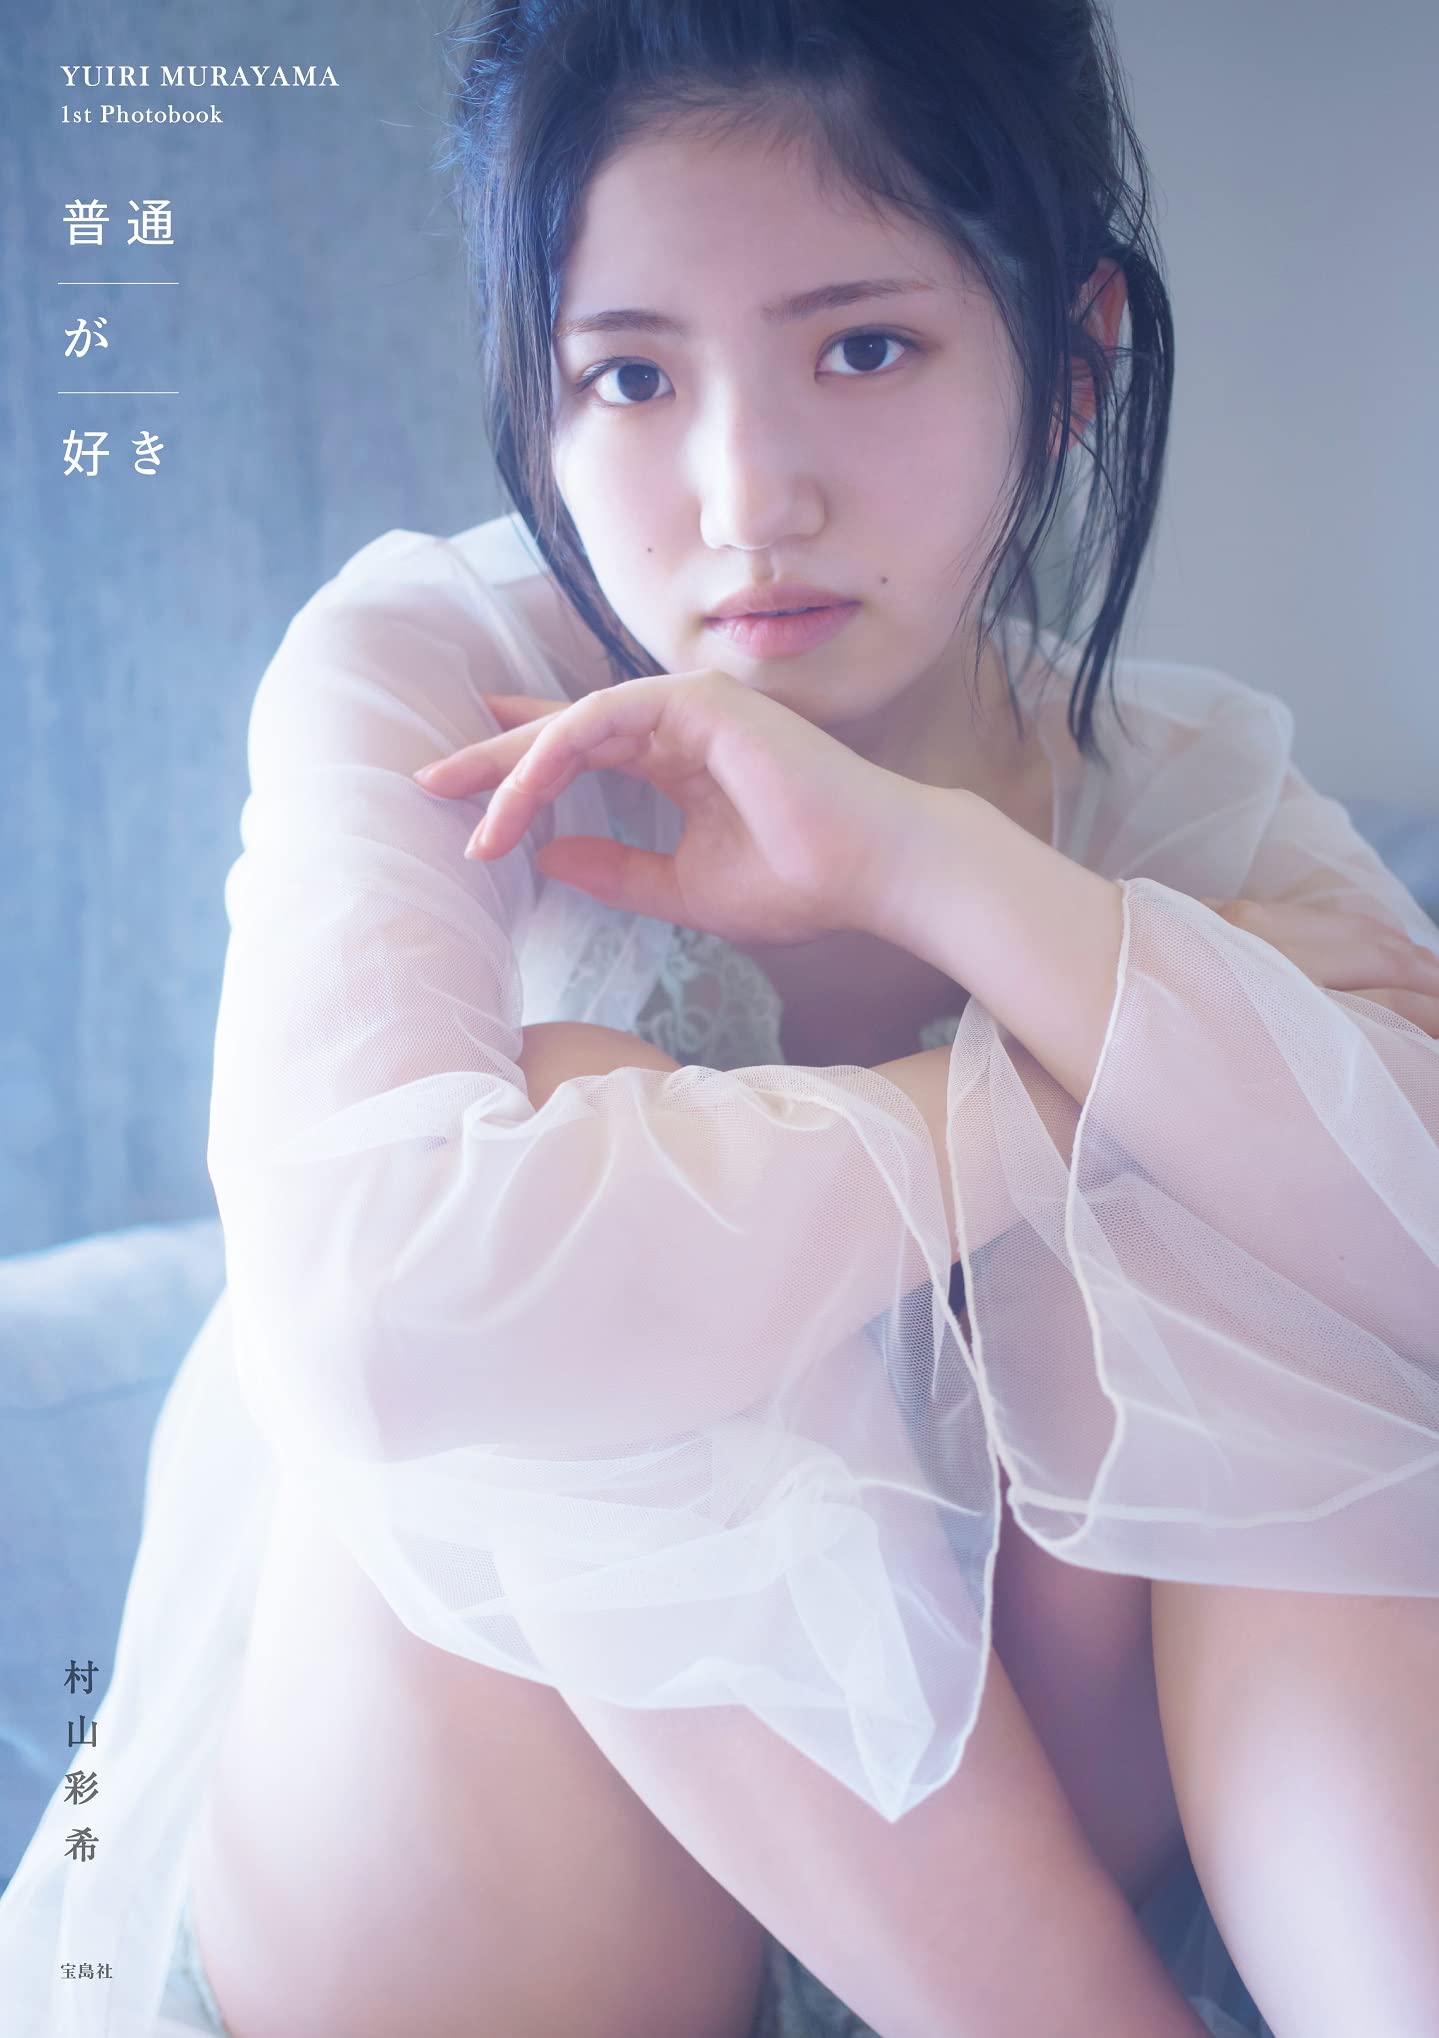 Yuiri Murayama 1st Photo Book "Futsu ga suki" / AKB48